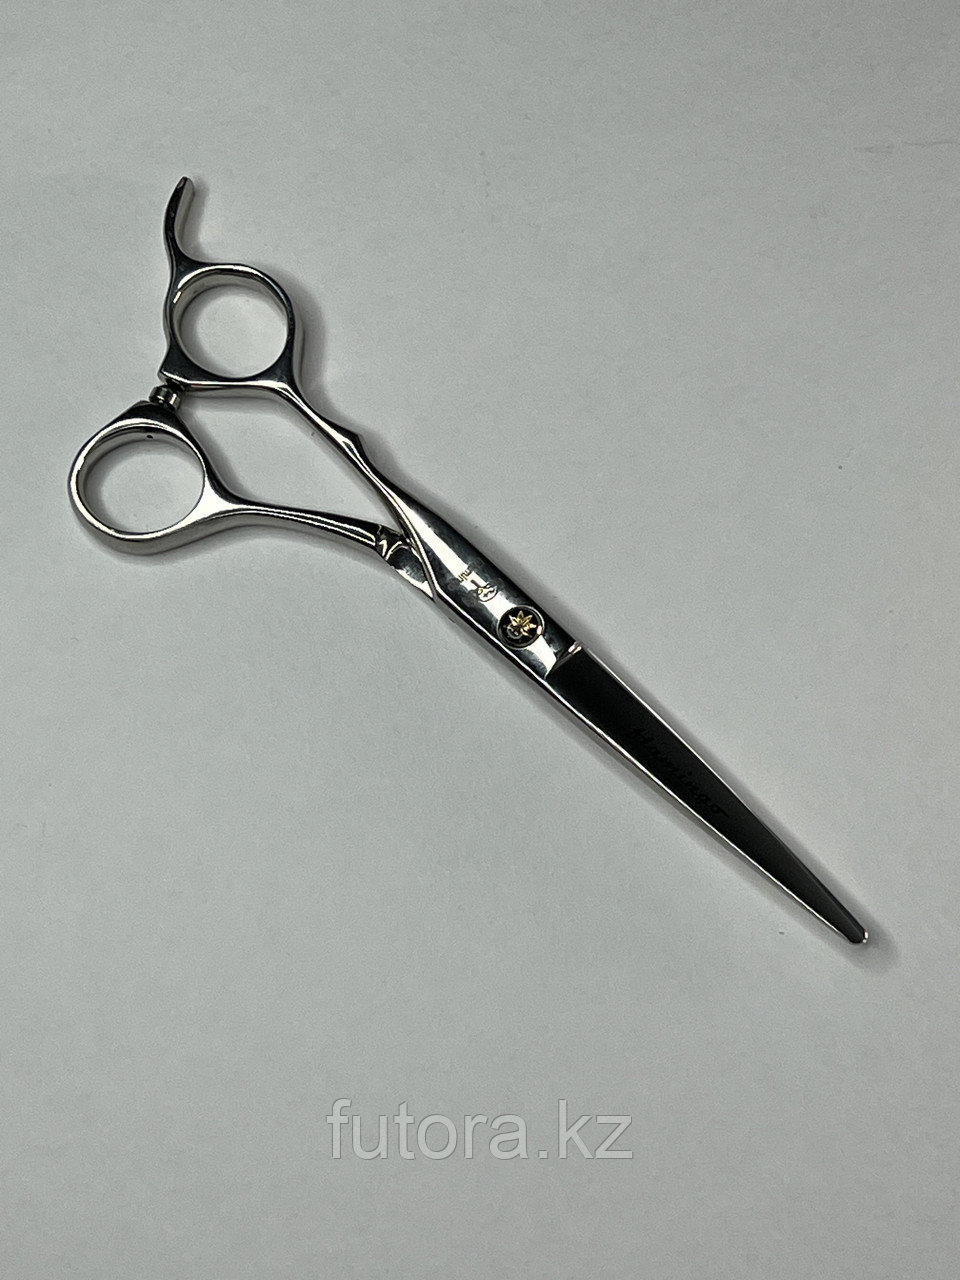 Парикмахерские ножницы для стрижки волос "Flamingo - B2-60", для левшей.